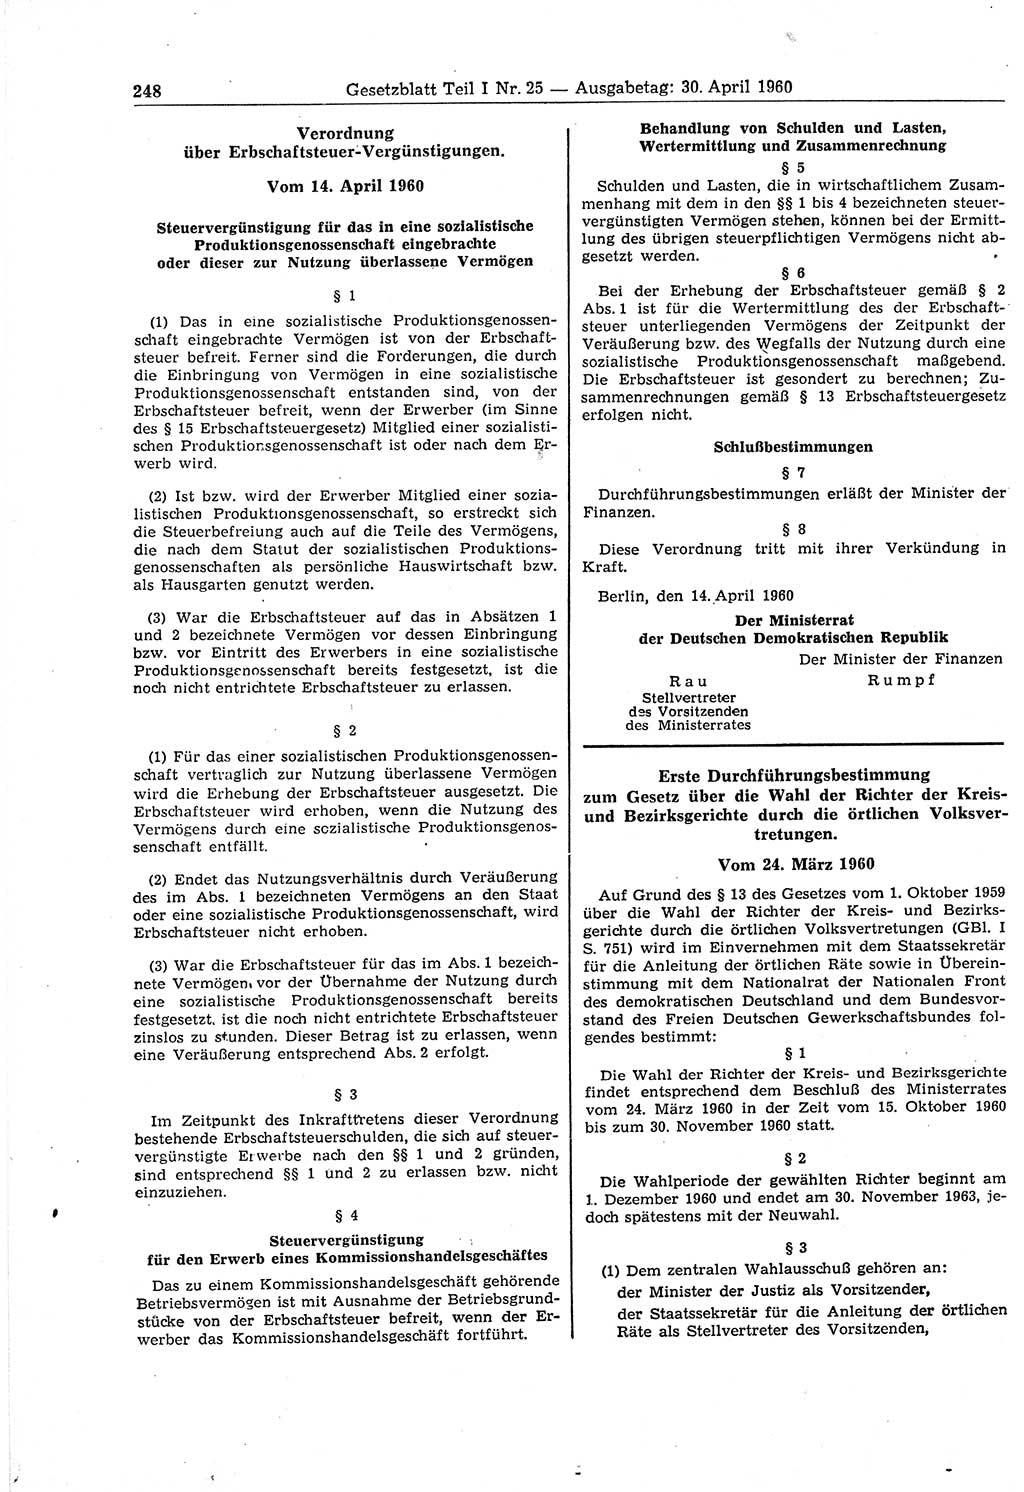 Gesetzblatt (GBl.) der Deutschen Demokratischen Republik (DDR) Teil Ⅰ 1960, Seite 248 (GBl. DDR Ⅰ 1960, S. 248)